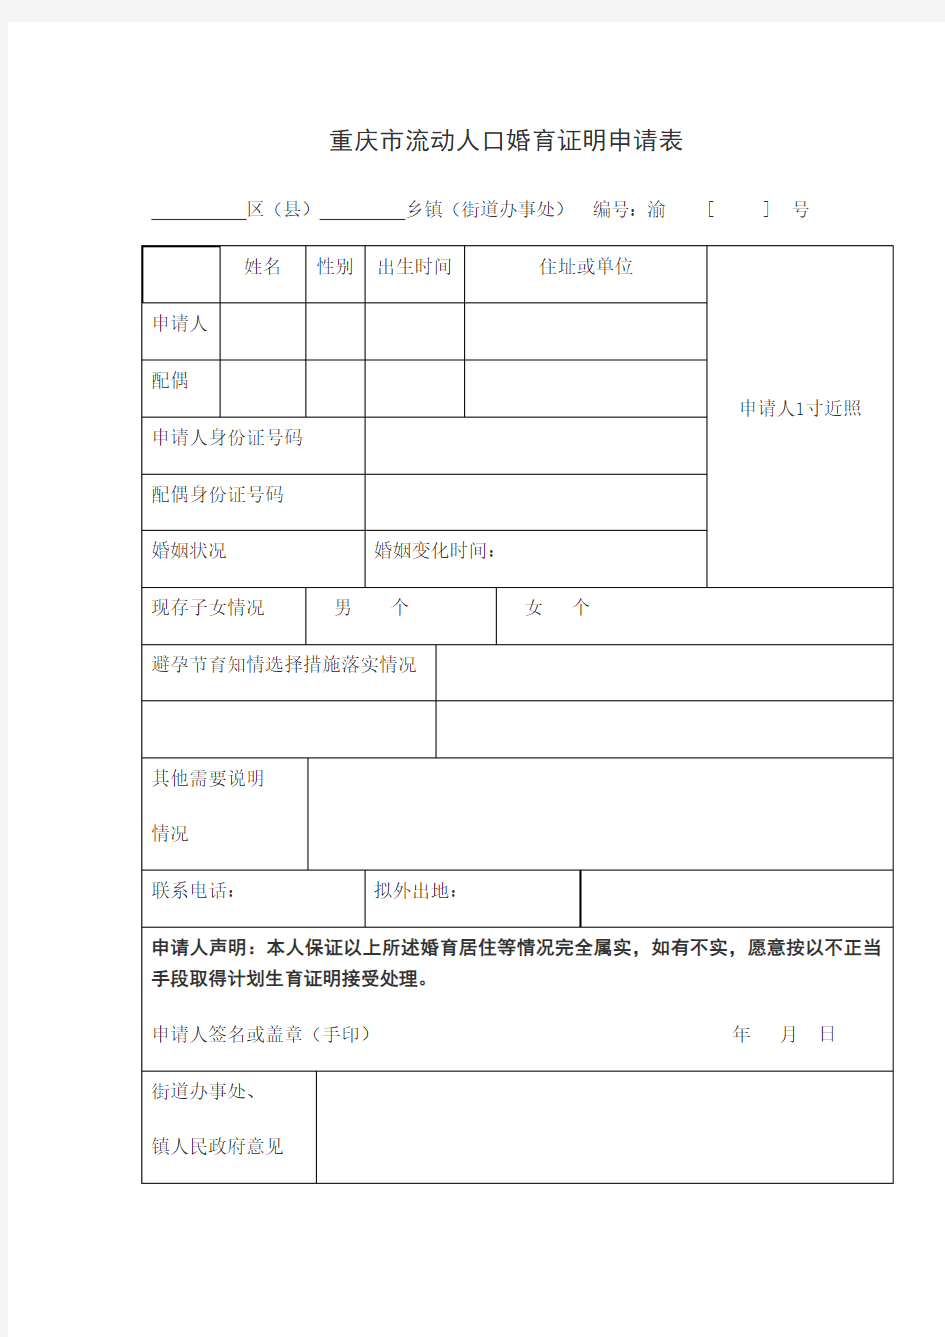 重庆市流动人口婚育证明申请表